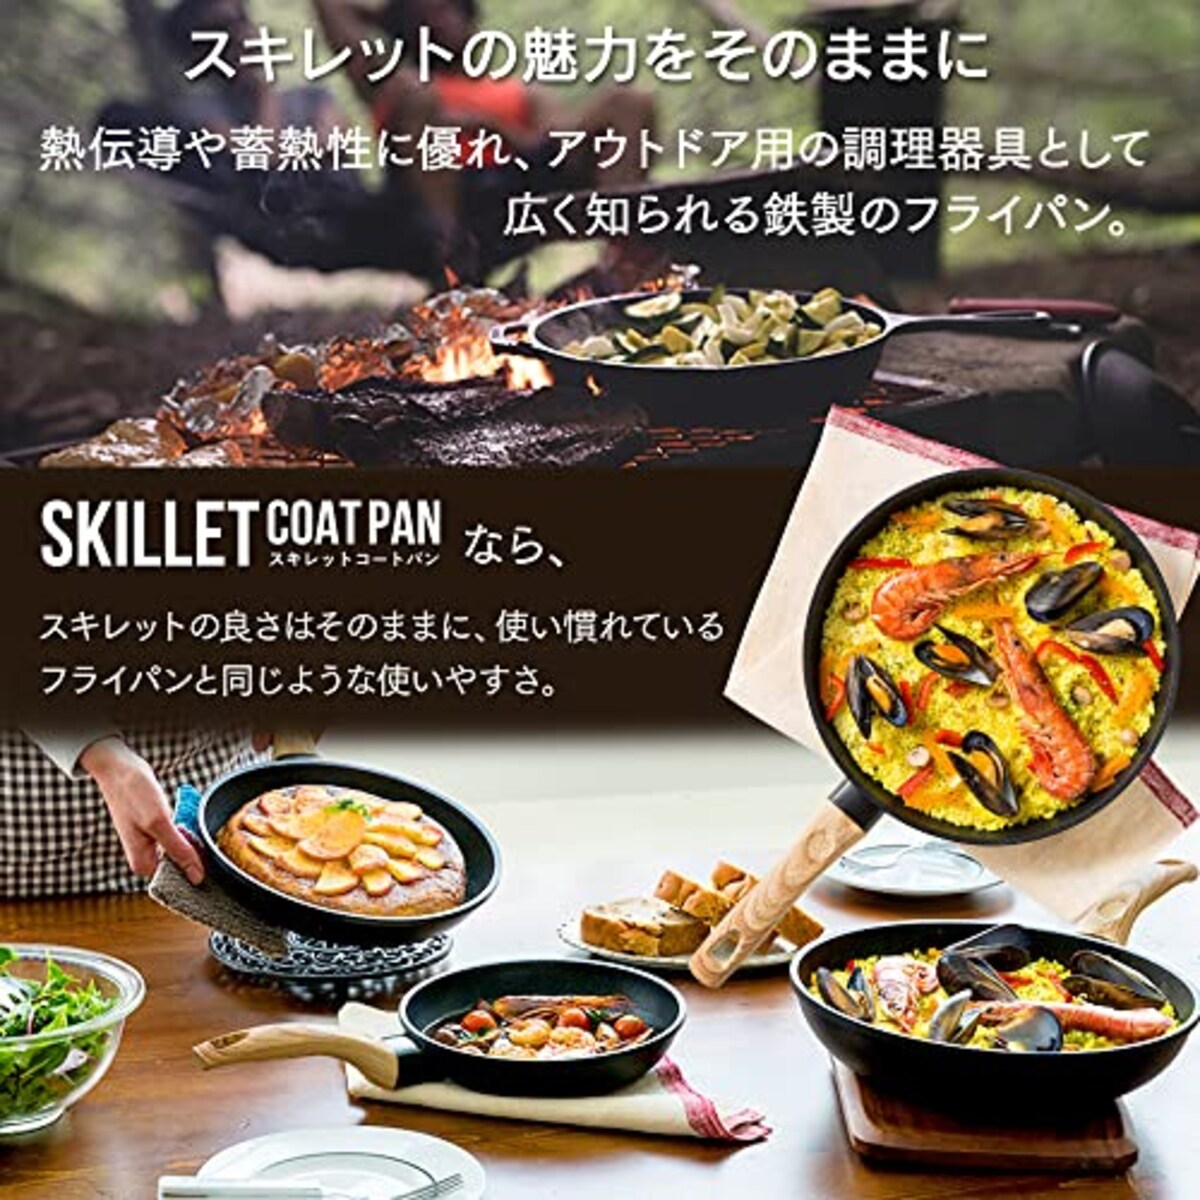  アイリスオーヤマ IH 対応 フライパン 20cm スキレットコートパン ブラック SKL-20IH画像4 